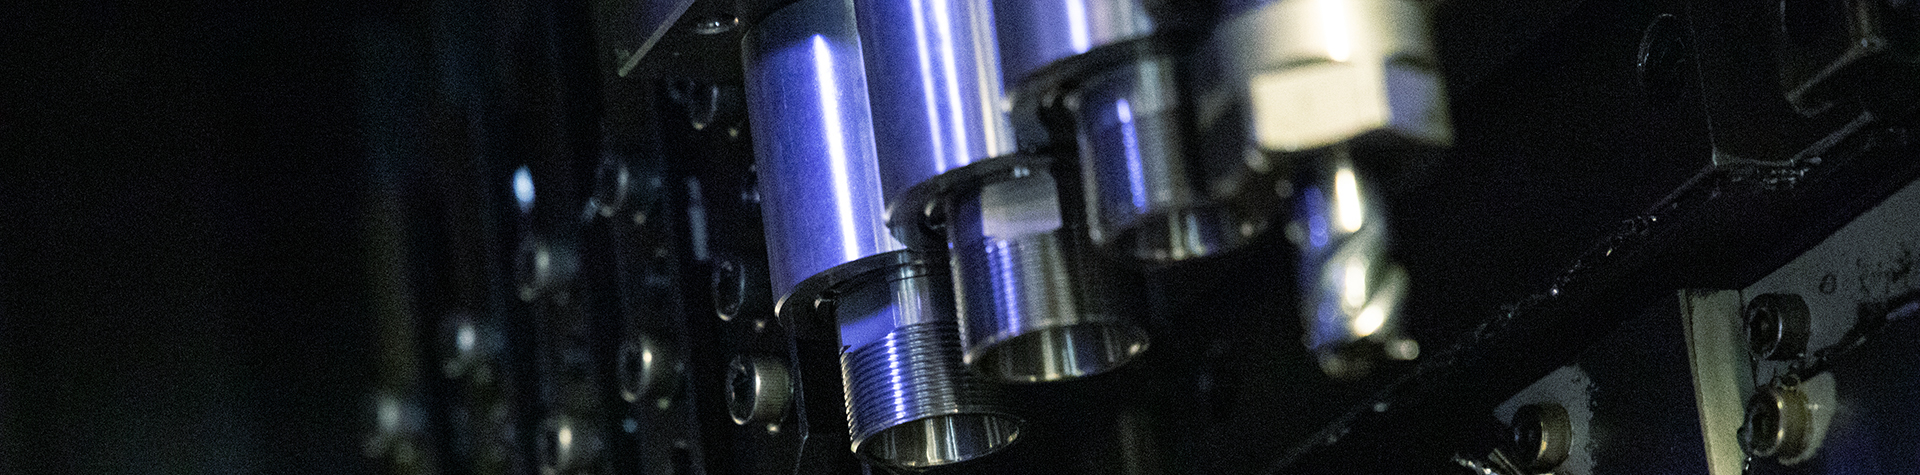 Maschinen Details